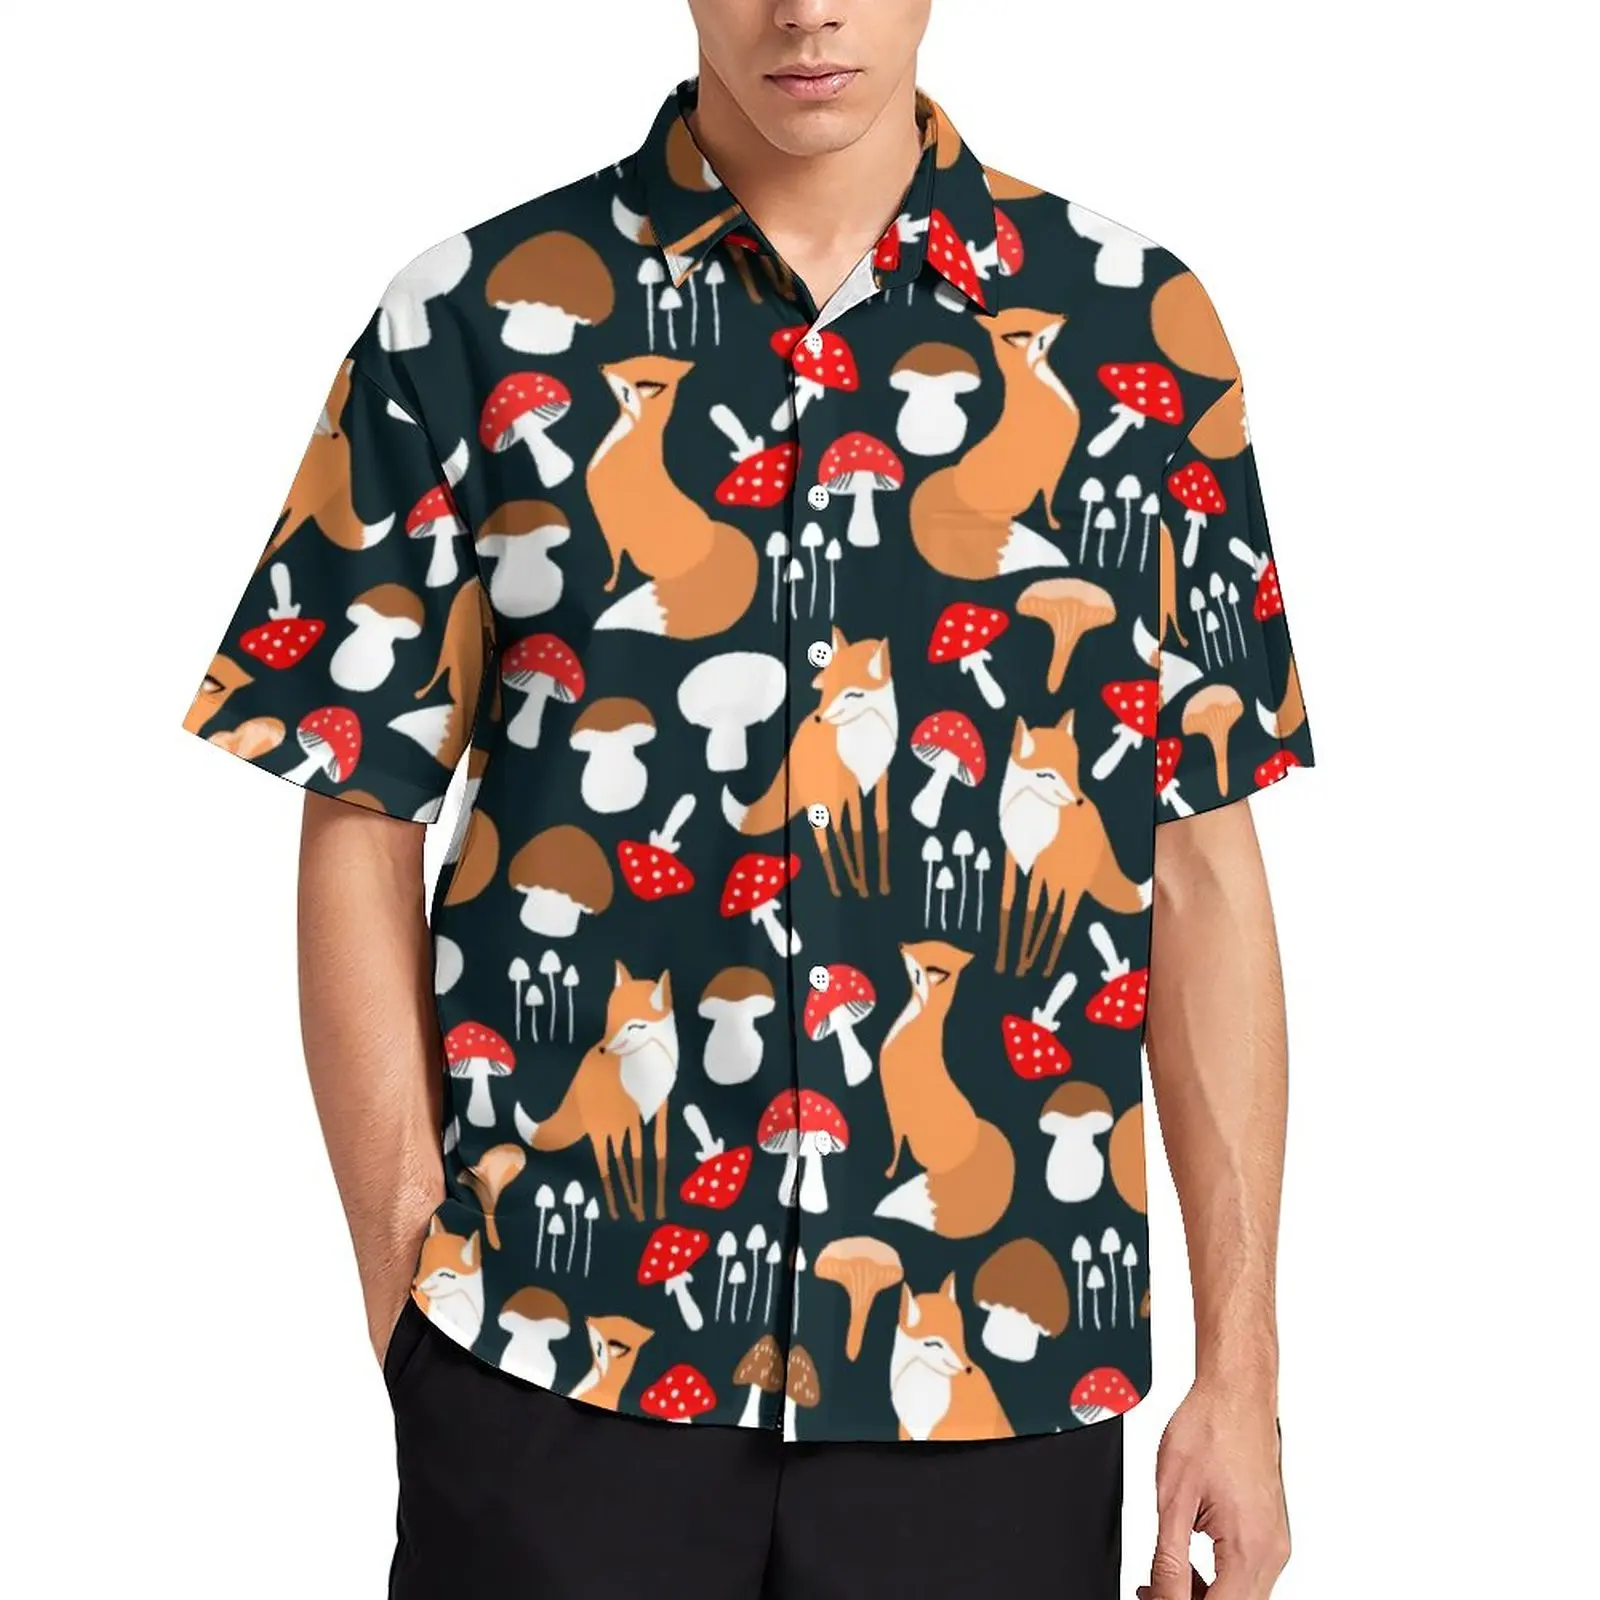 

Повседневная рубашка с рисунком милой лисы, Пляжная Свободная рубашка с рисунком, гавайская уличная одежда, блузки с коротким рукавом, дизайнерская одежда оверсайз